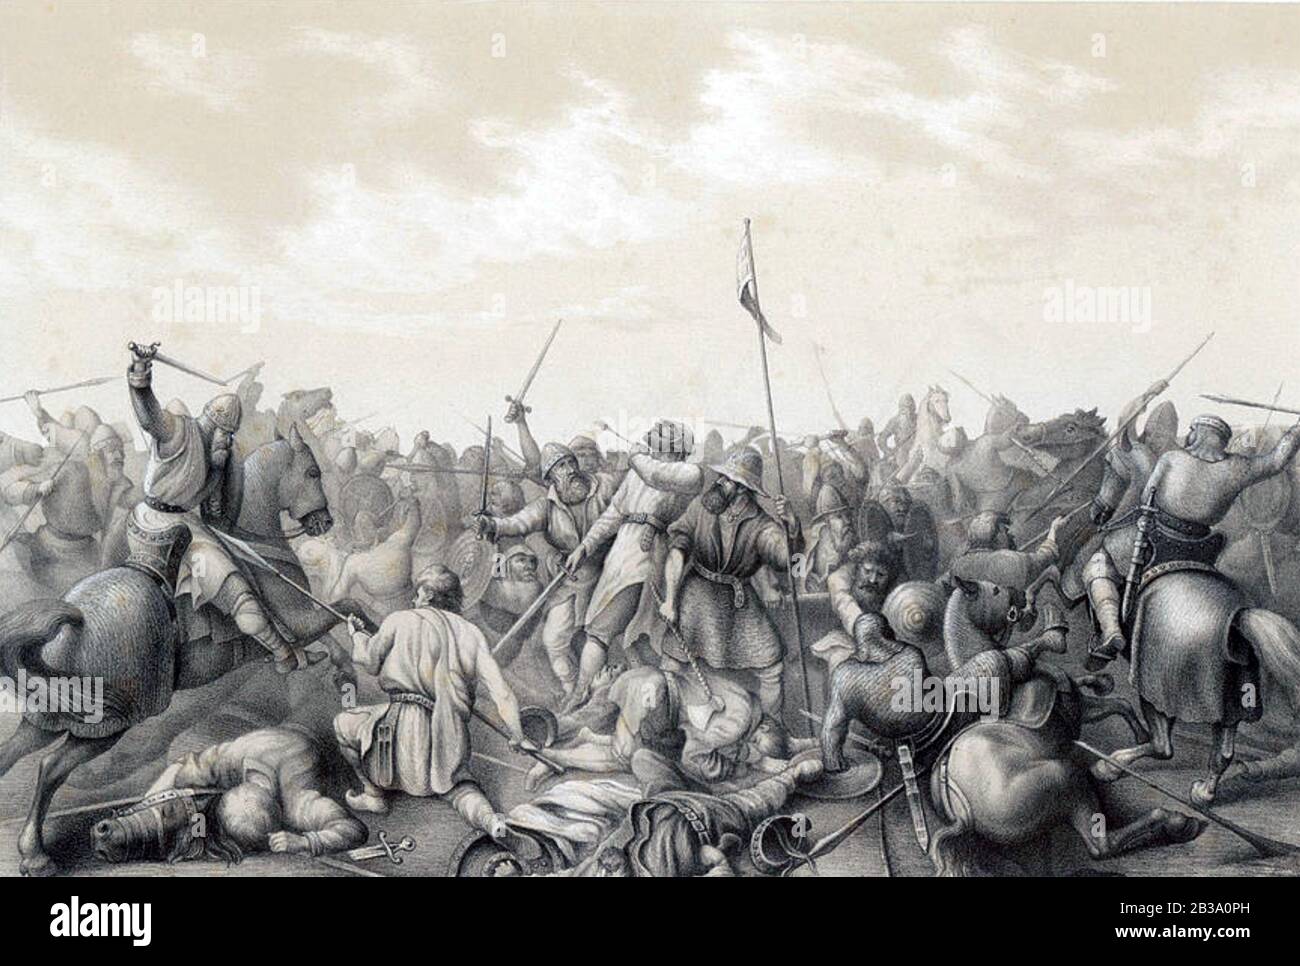 Battaglia DI STAMFORD BRIDGE, East Riding of Yorkshire, 25 settembre 1065 tra un esercito inglese sotto il re Harold Godwinson e una forza norvegese invasore guidato dal re Harald Hardrada Foto Stock